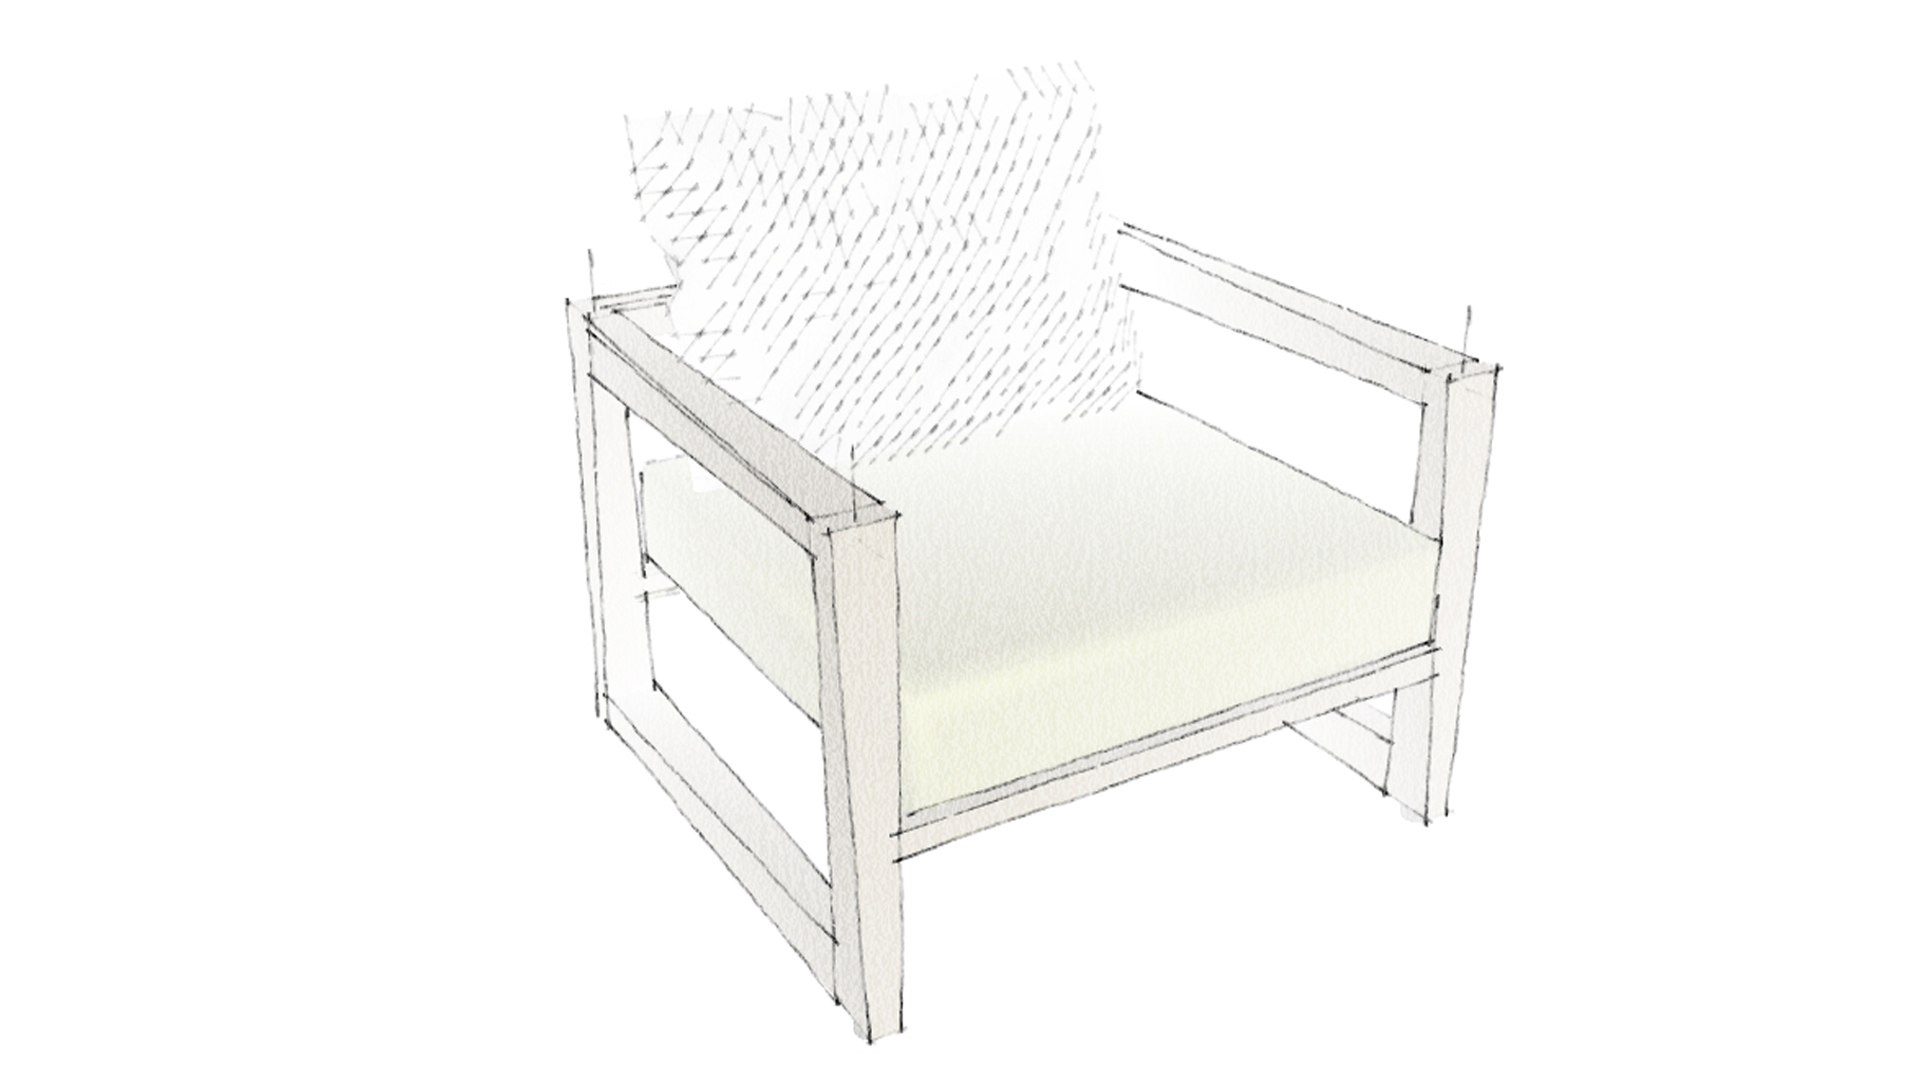 SKAAL est une collection de mobilier d’extérieur et luminaires extérieurs dessinée pour LES JARDINS AIX EN PROVENCE. Le fauteuil en teck SKAAL est idéal pour l’ameublement d’extérieur. Ce fauteuil design pour LES JARDINS AIX EN PROVENCE est une création de Claude Robin, alliant design moderne et ergonomie. Les fauteuils d’extérieur en teck s’adaptent à tout type d’extérieur.